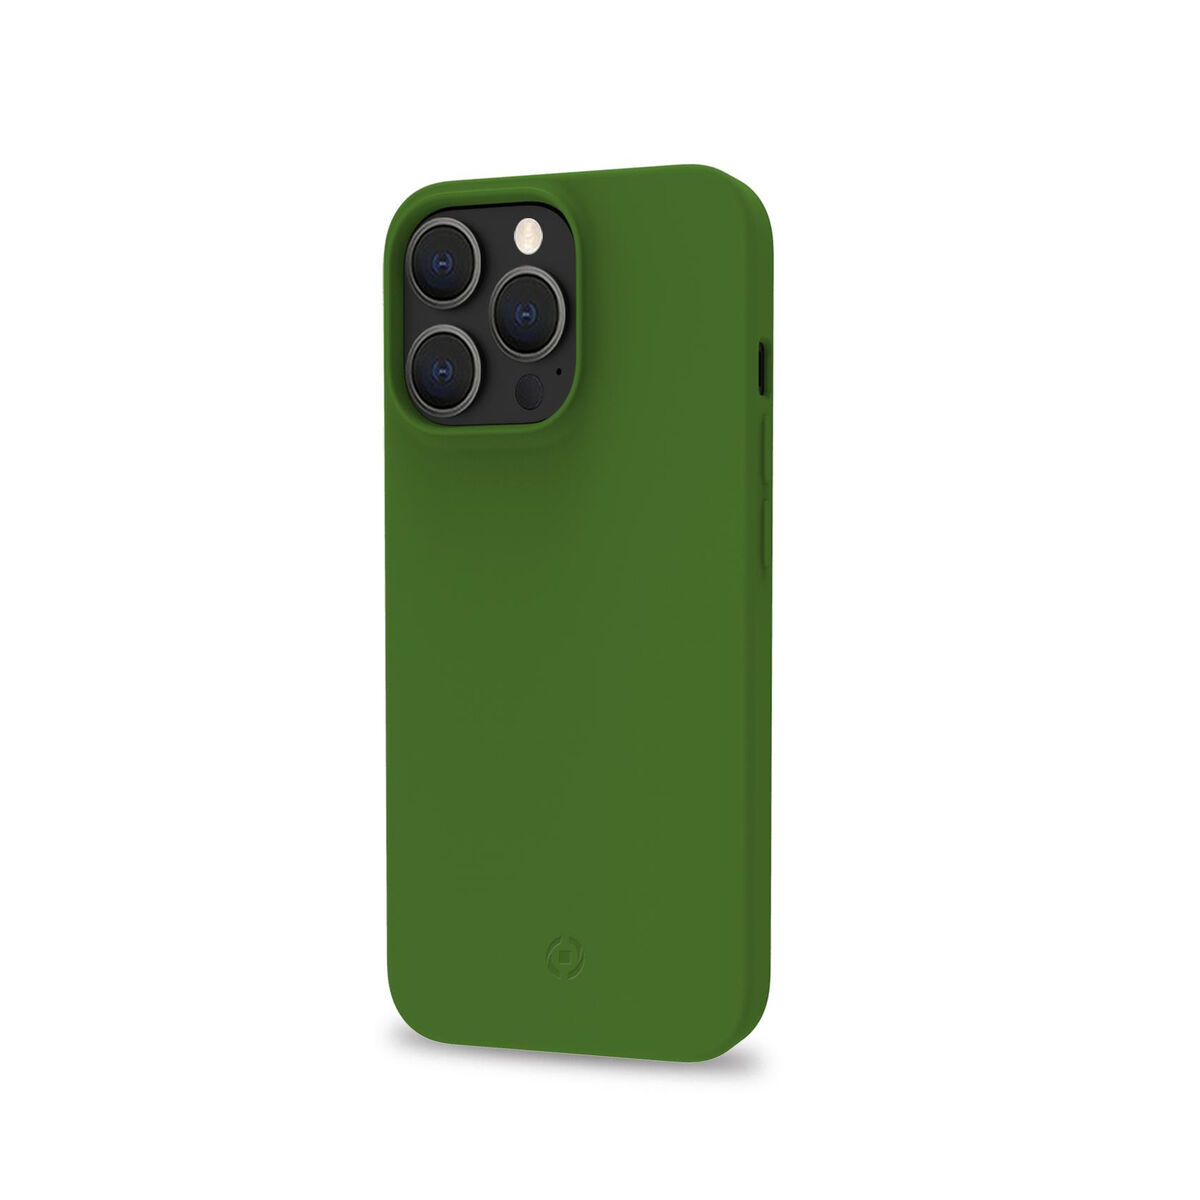 Osta tuote Puhelinsuoja Celly iPhone 14 Pro Musta Vihreä verkkokaupastamme Korhone: Tietokoneet & Elektroniikka 10% alennuksella koodilla KORHONE